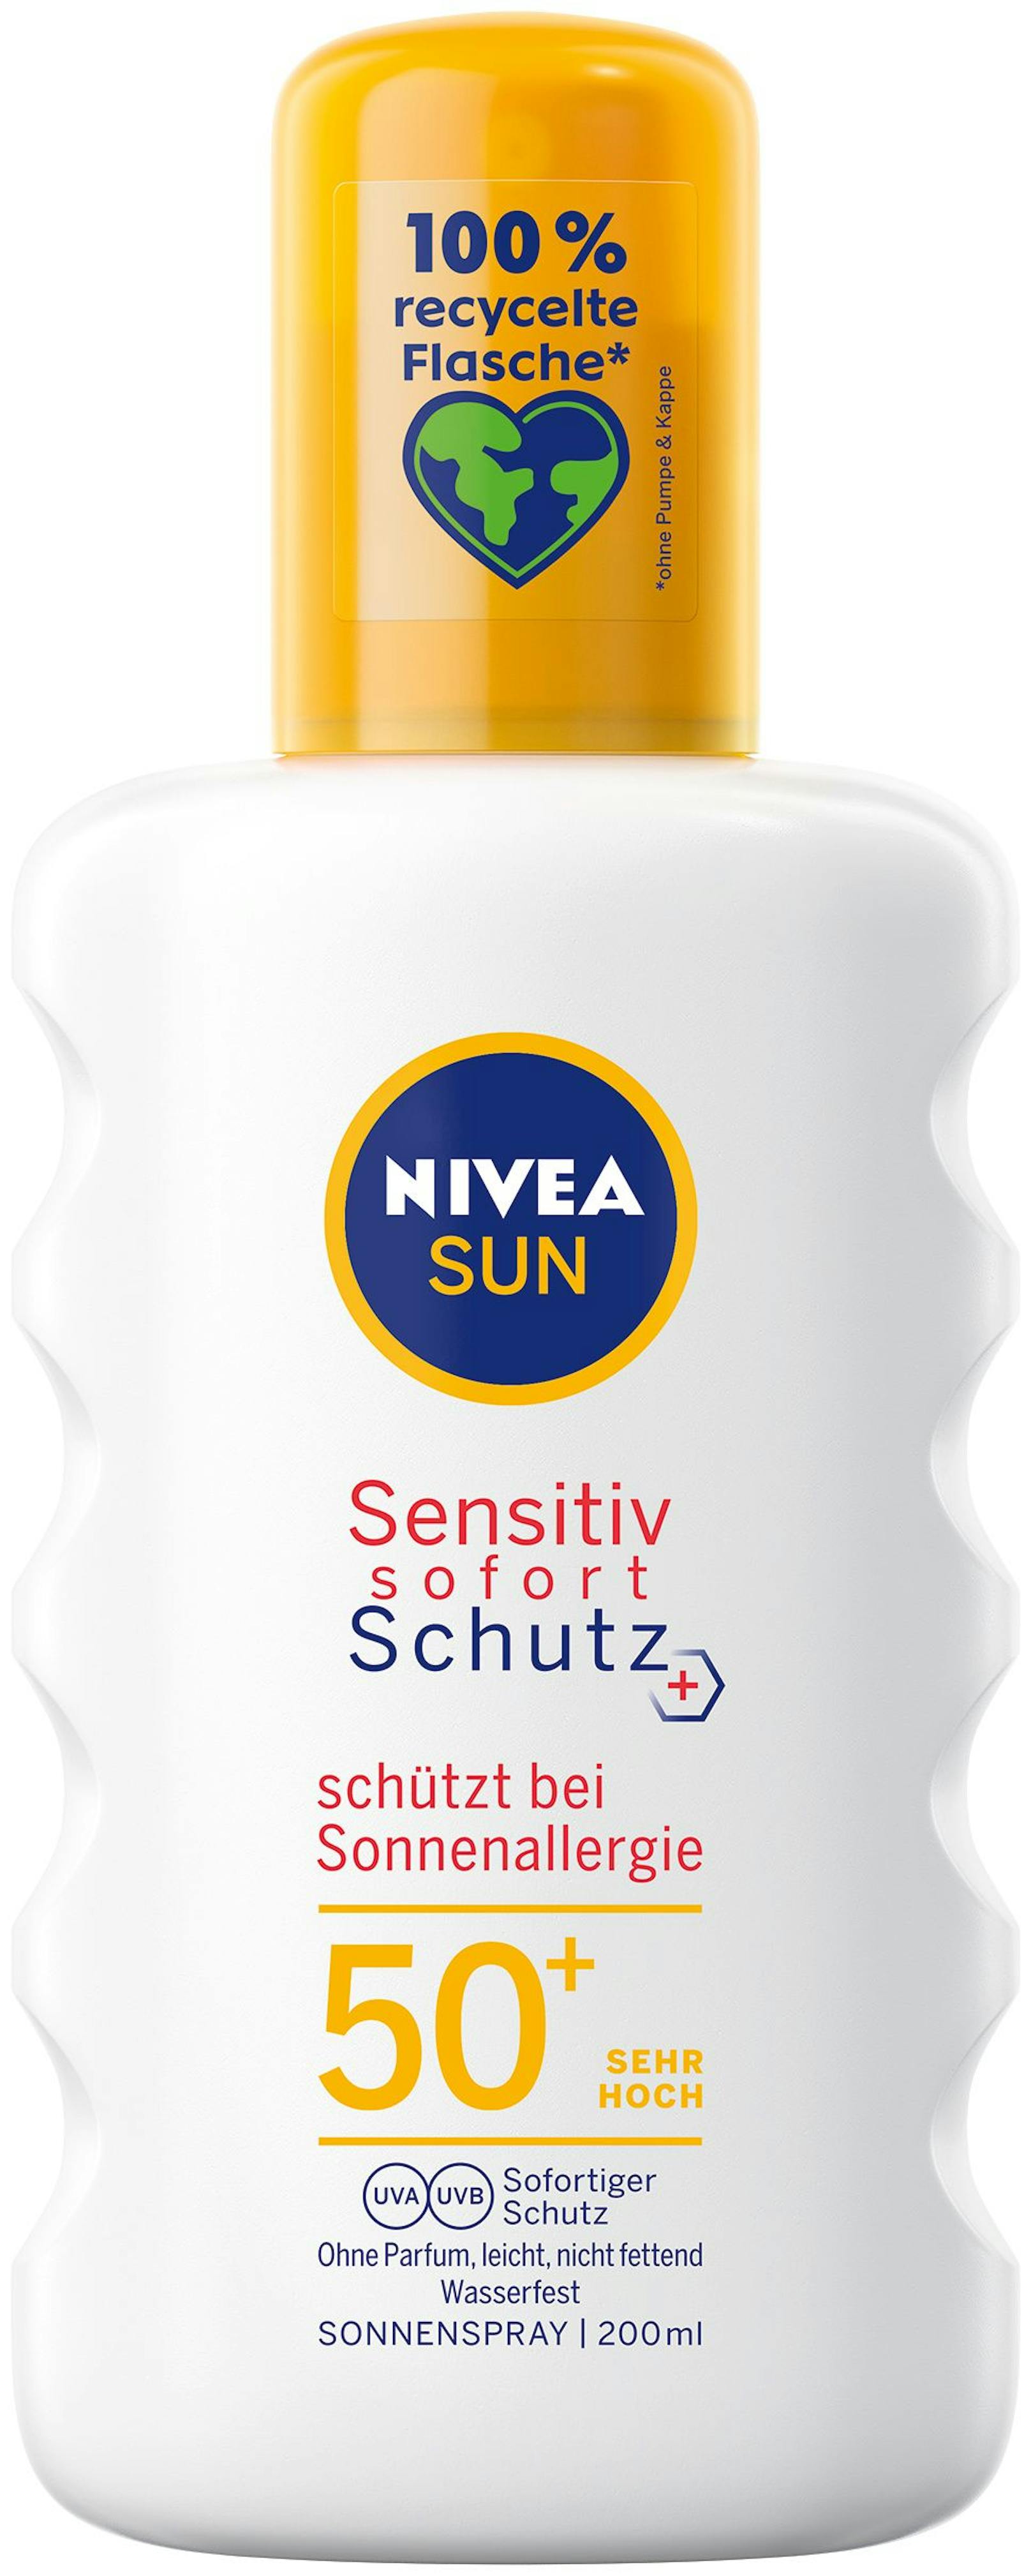 Das "Sensitiv Sofortschutz"-Sonnenspray&nbsp;von Nivea Sun (17,95 Euro) schützt dank sehr hohem UVA-Schutz und Antioxidantien besonders sensible Haut vor <strong>Sonnenallergien</strong> und Irritationen.